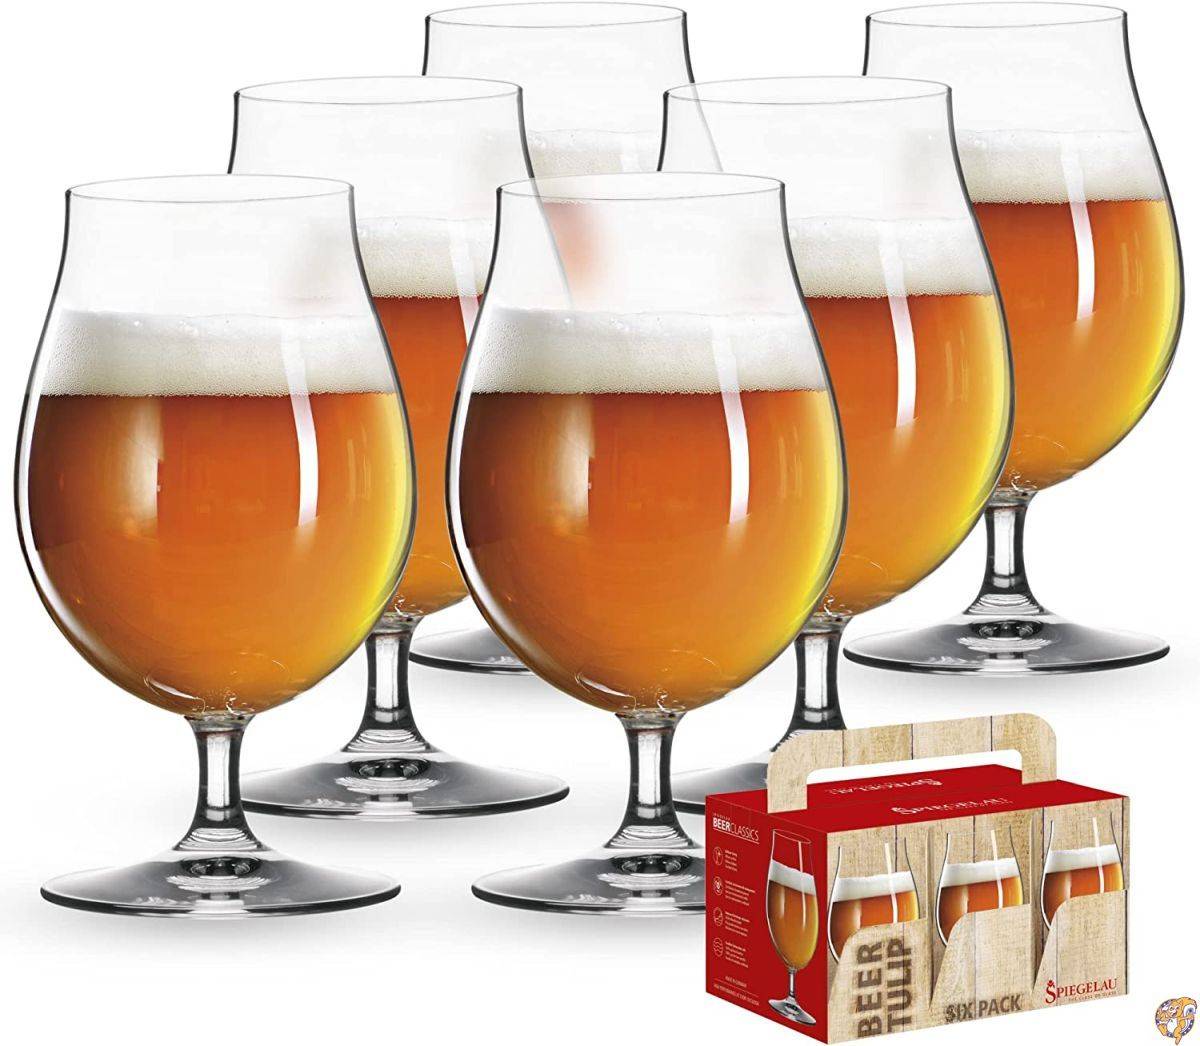 シュピゲラウグラス シュピゲラウ(Spiegelau) ビールグラス ビアチューリップ 440ml 4991884 6個入 送料無料